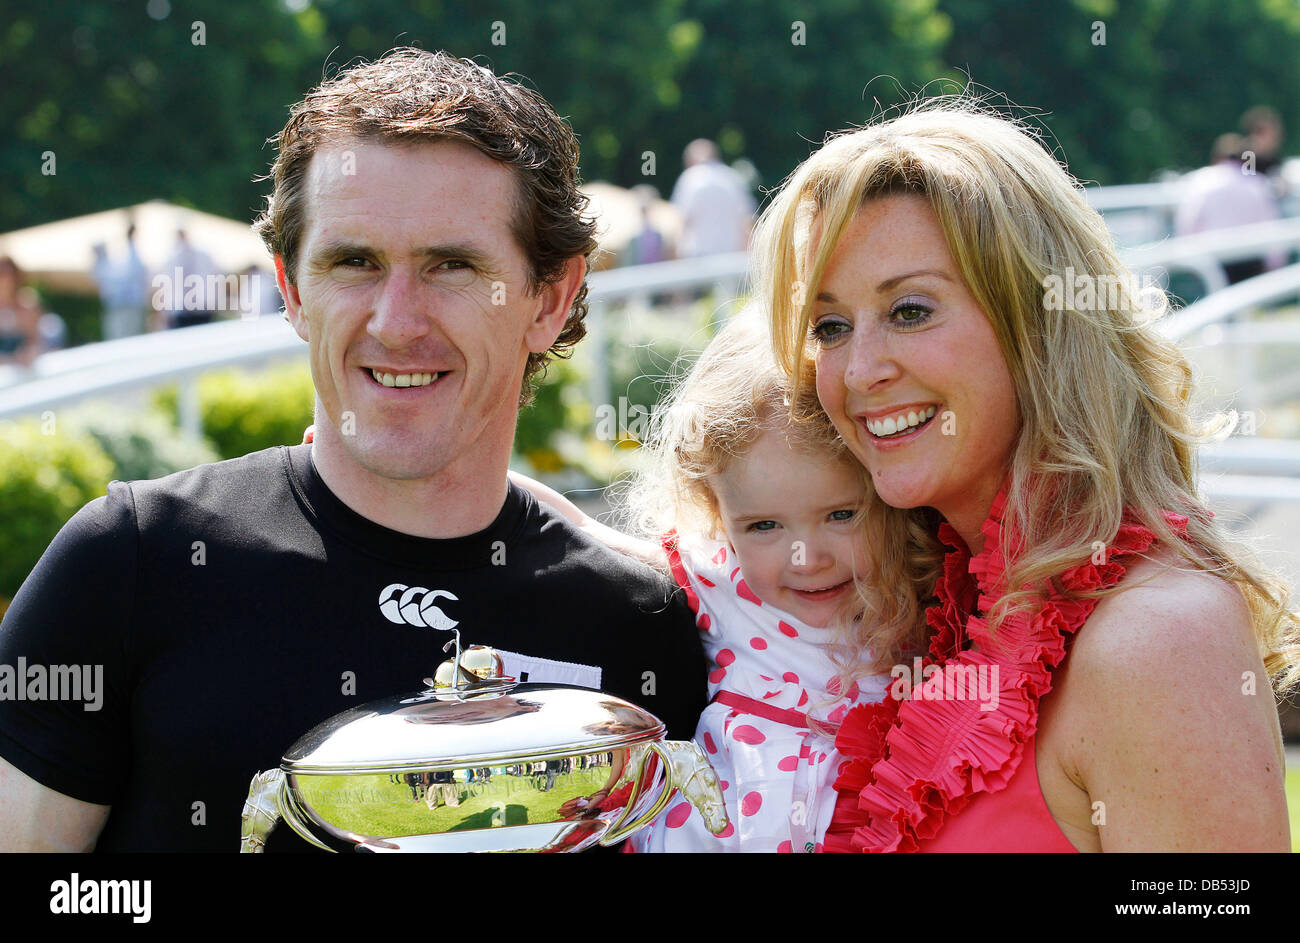 Tony McCoy und seine Frau und Tochter Tony McCoy erhält eine Trophäe, die NH Champion jockey für die Saison 2010/11 auf Sandown Pferderennbahn Sandown Rennen Esher, England - 23.04.11 Stockfoto